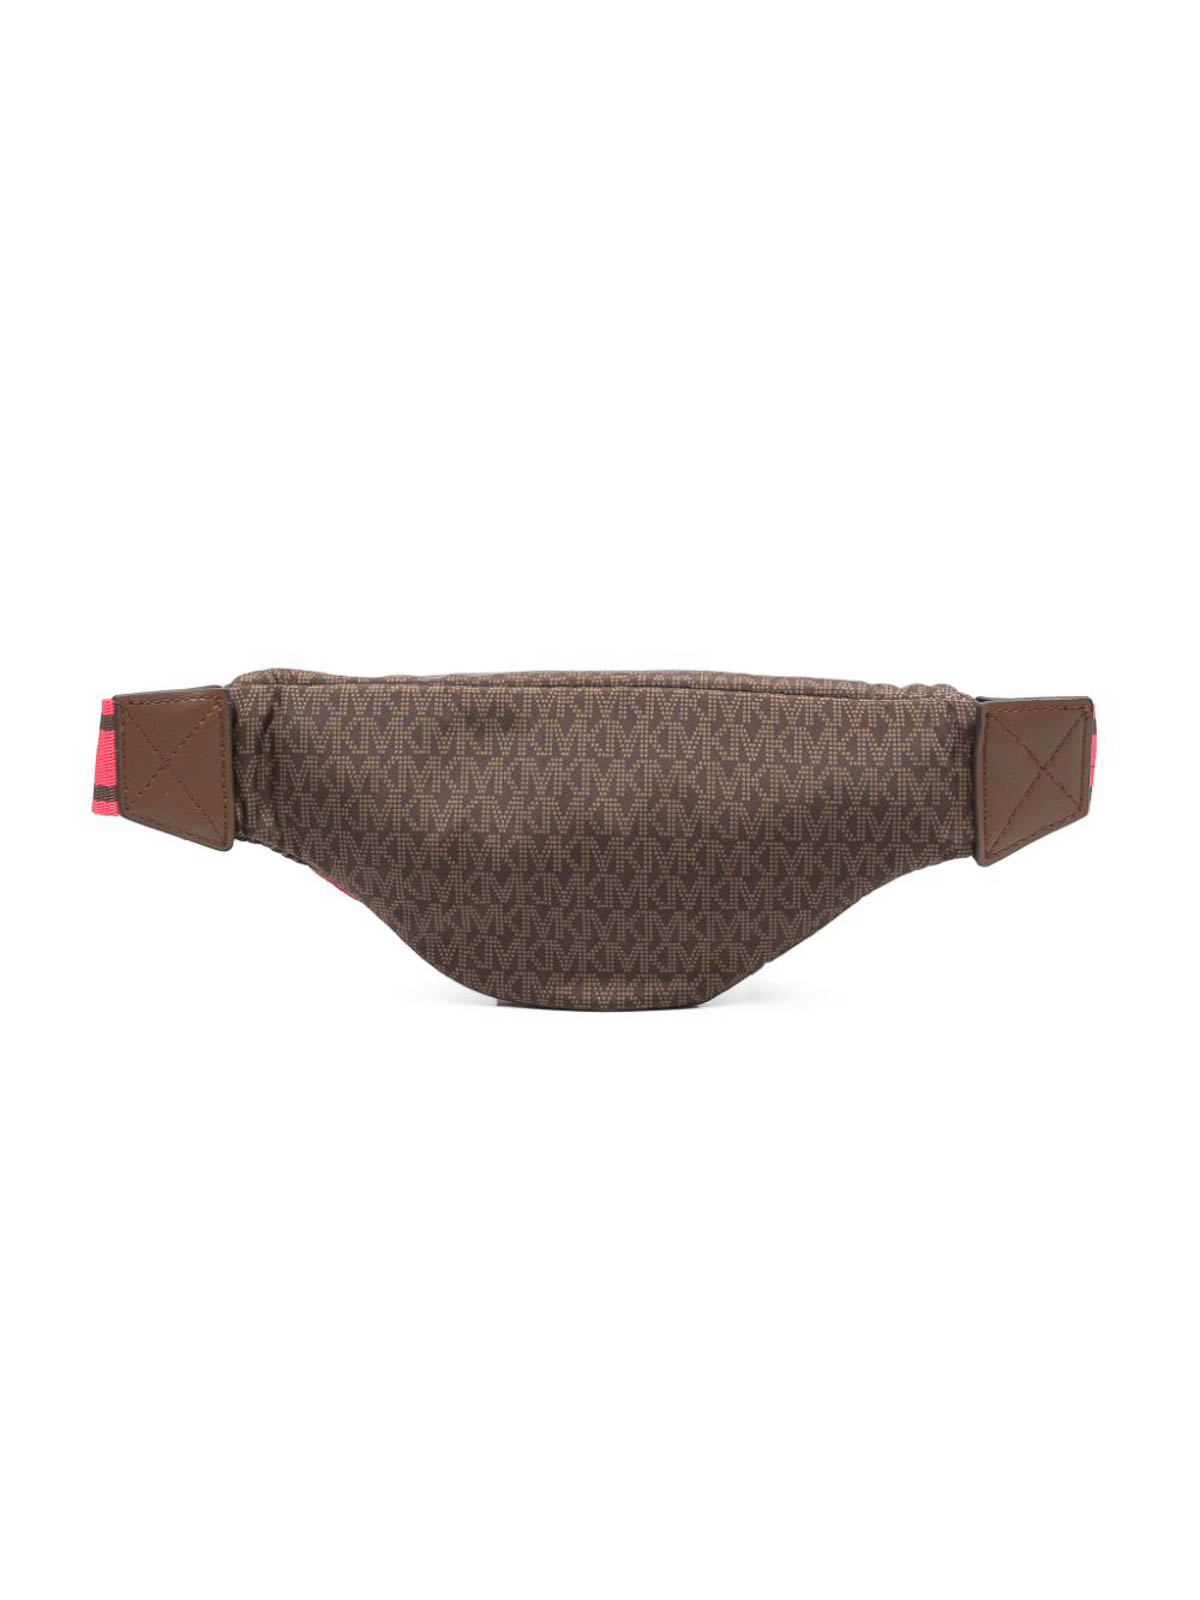 MICHAEL KORS: Michael Hudson grained leather belt bag - Black | MICHAEL  KORS belt bag 33F3LHDY1L online at GIGLIO.COM